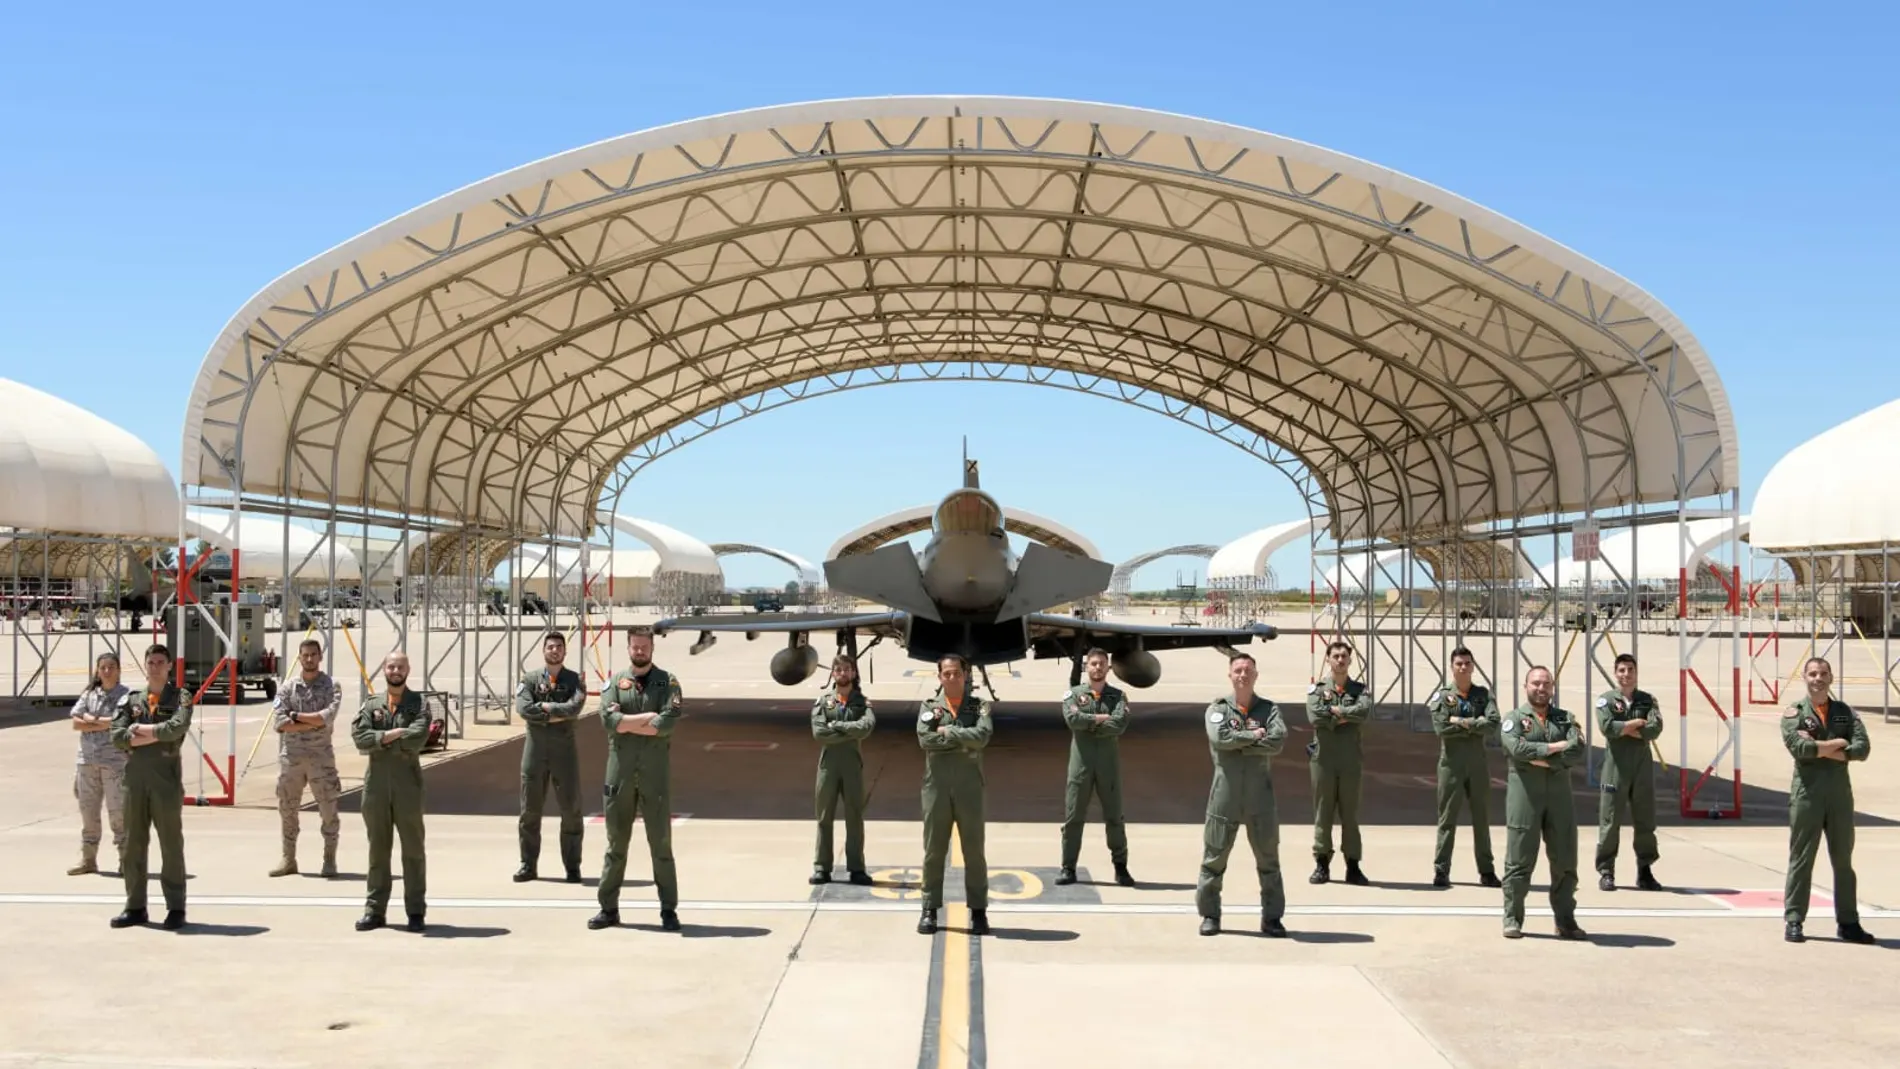 Imagen de los nuevos pilotos del Ejército del Aire